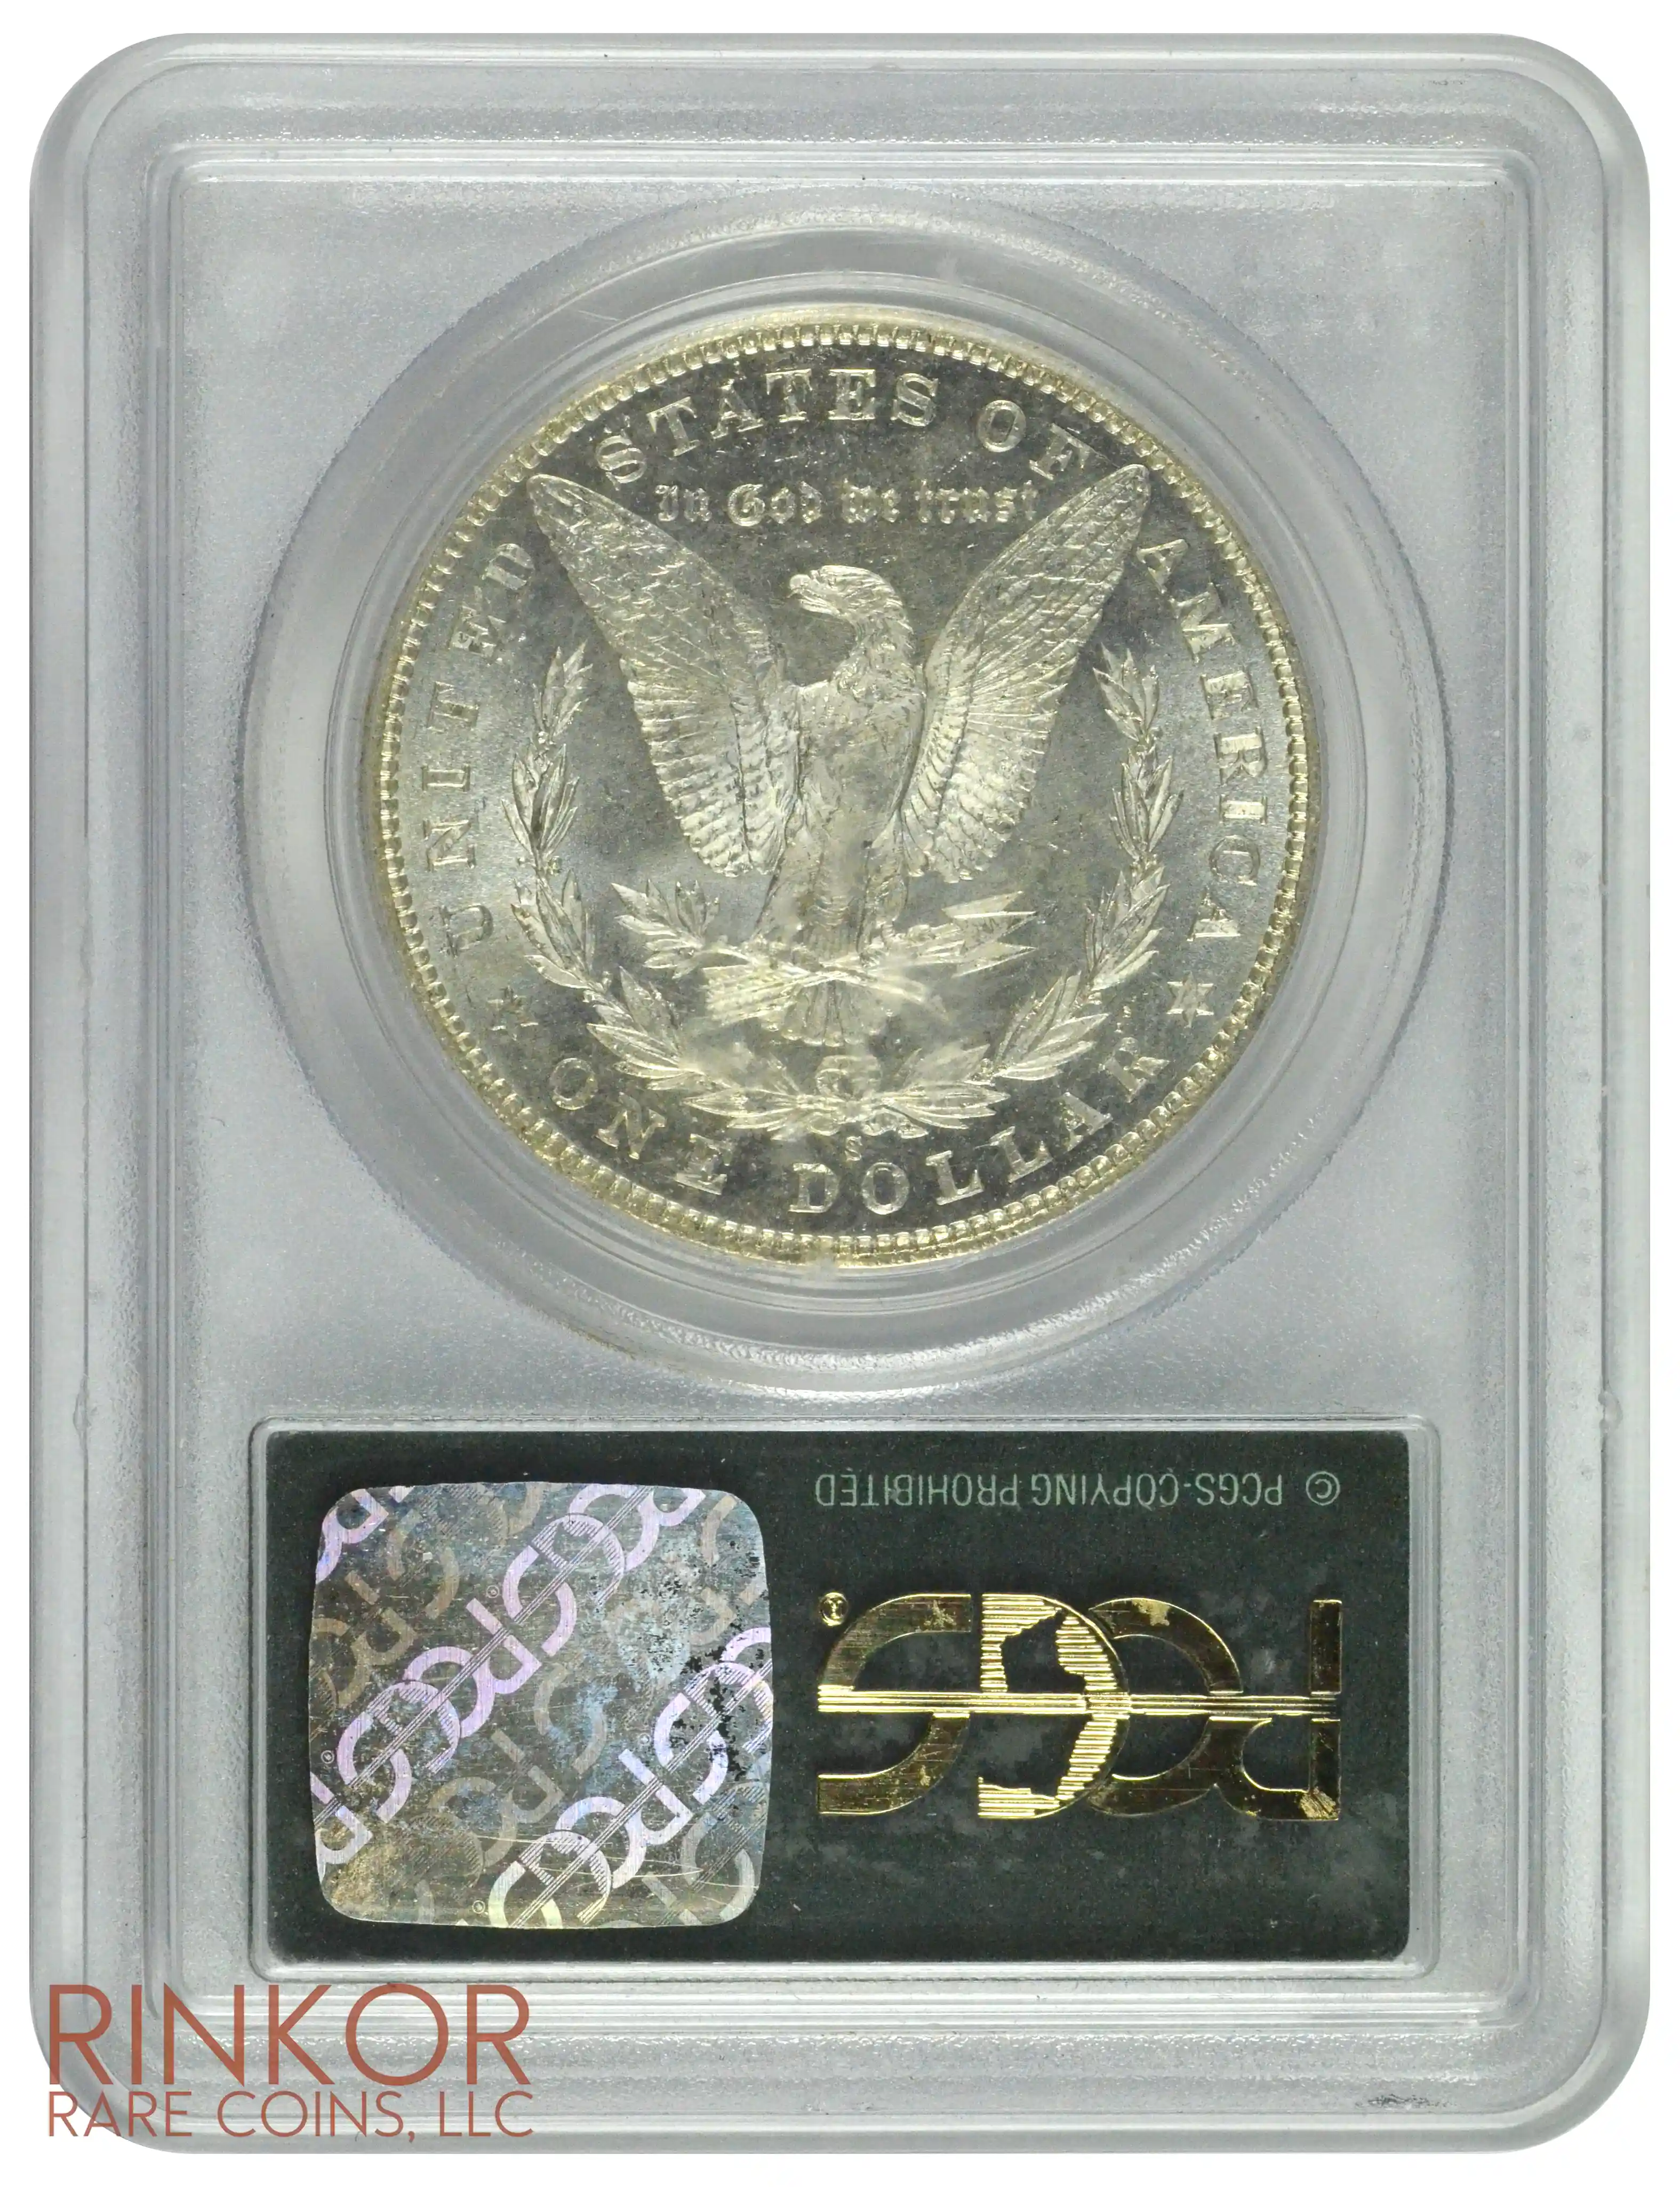 1900-S $1 PCGS MS 65 PL